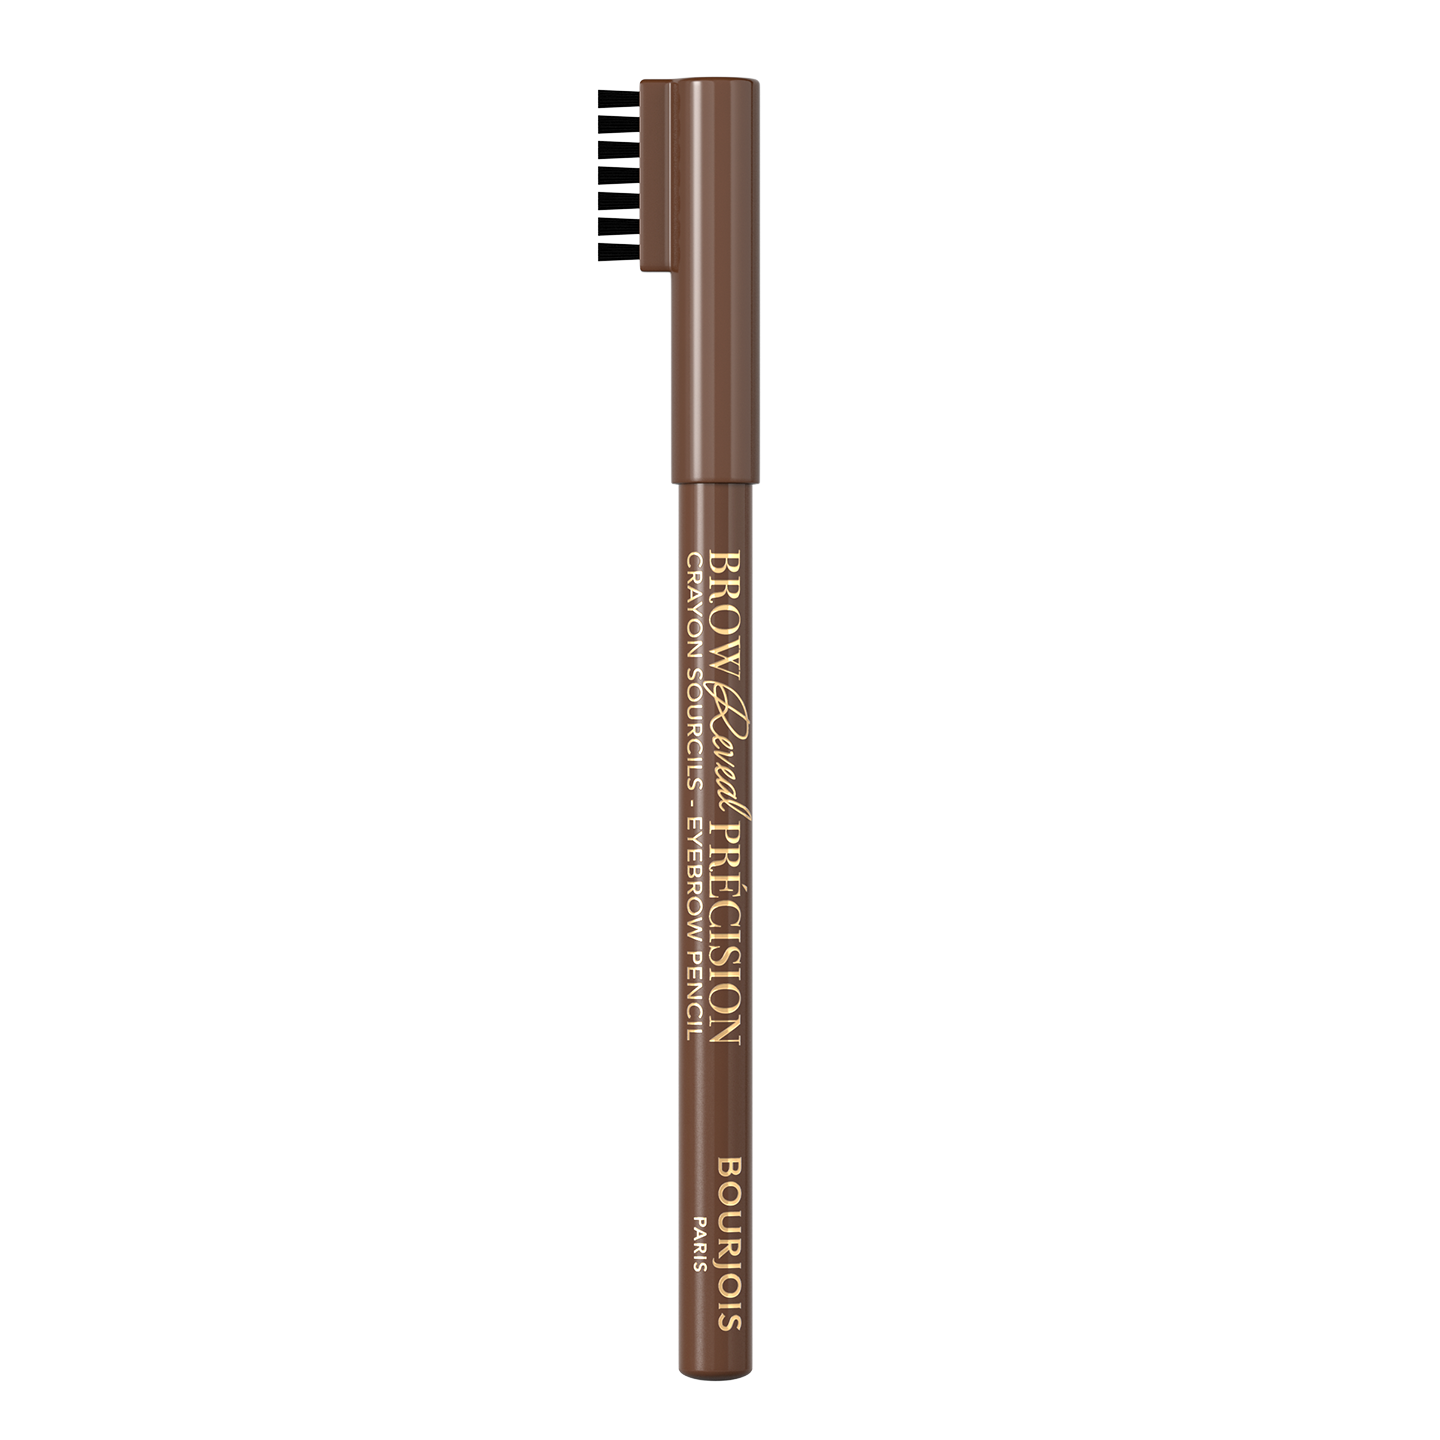 Олівець для брів Bourjois Brow Reveal Precision Medium Brown тон 003, 1.4 г (8000019760400) - фото 1